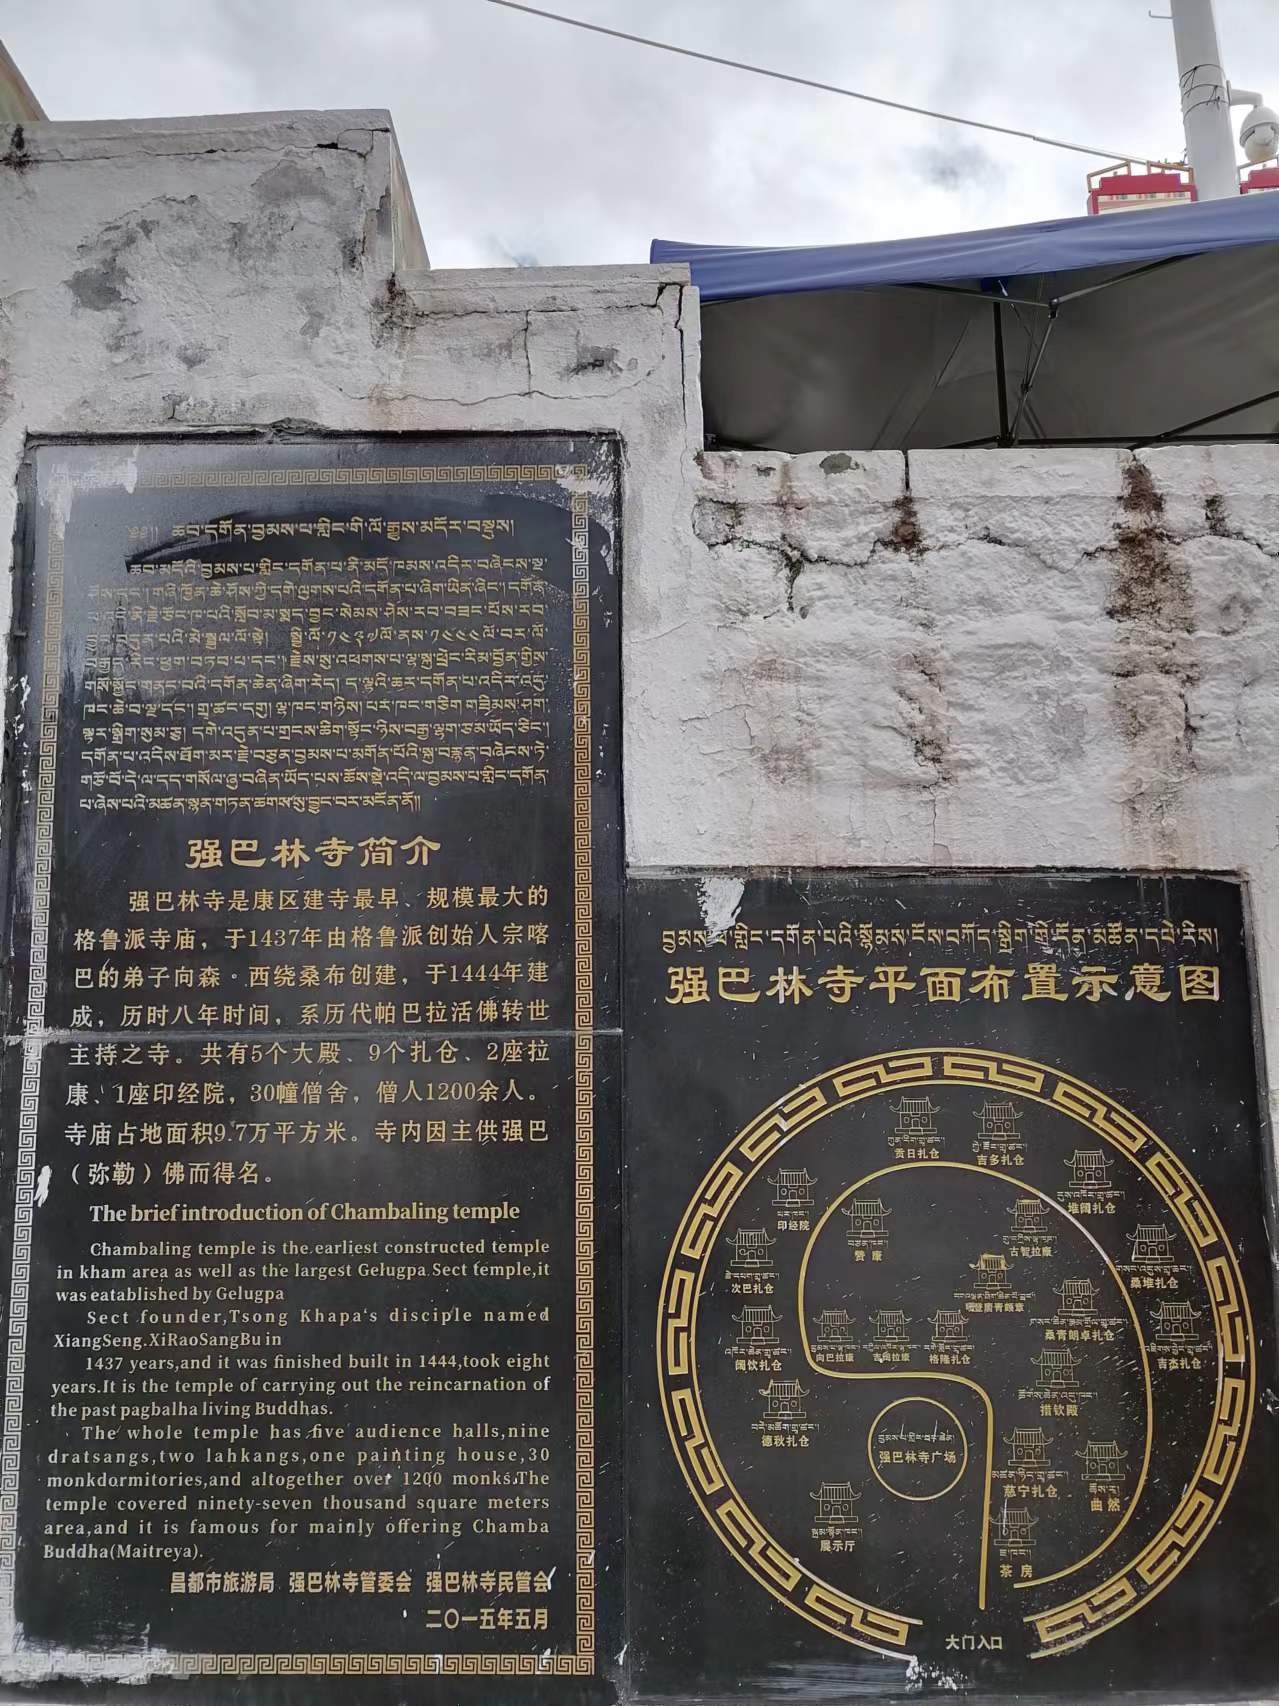 #探寻文物古迹 #城市人文手记 位于昌都主城区的强巴林寺曾是康区建造最早、规模最大的藏传佛教格鲁派寺